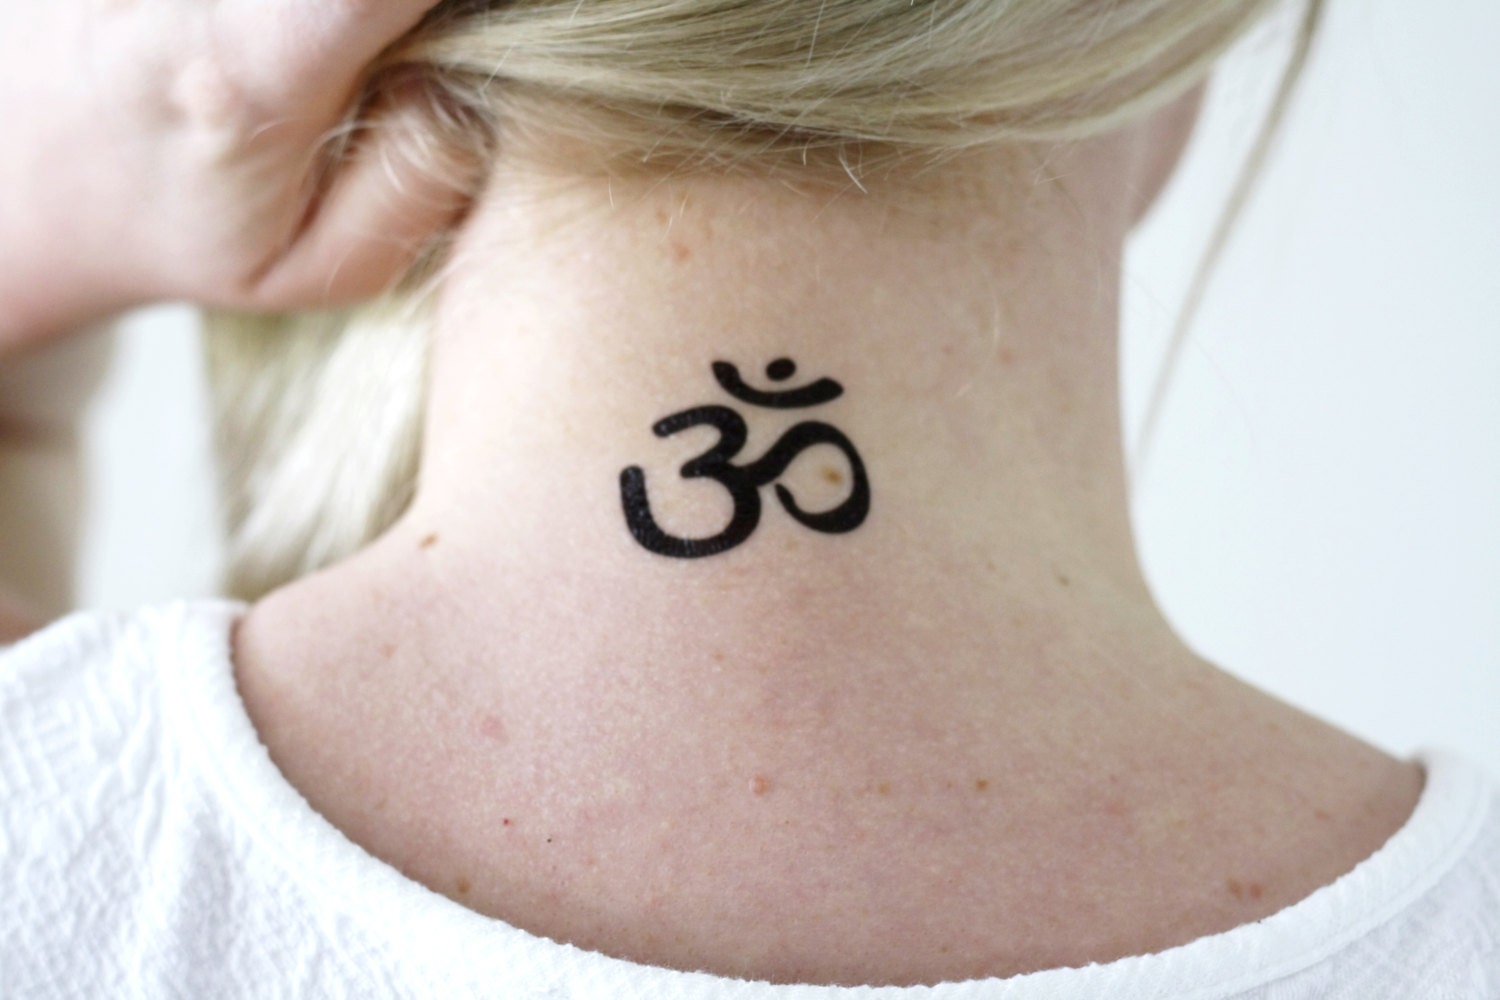 Om Tattoo / Aum Symbol Tattoo / Om Temporary Tattoo / - Etsy